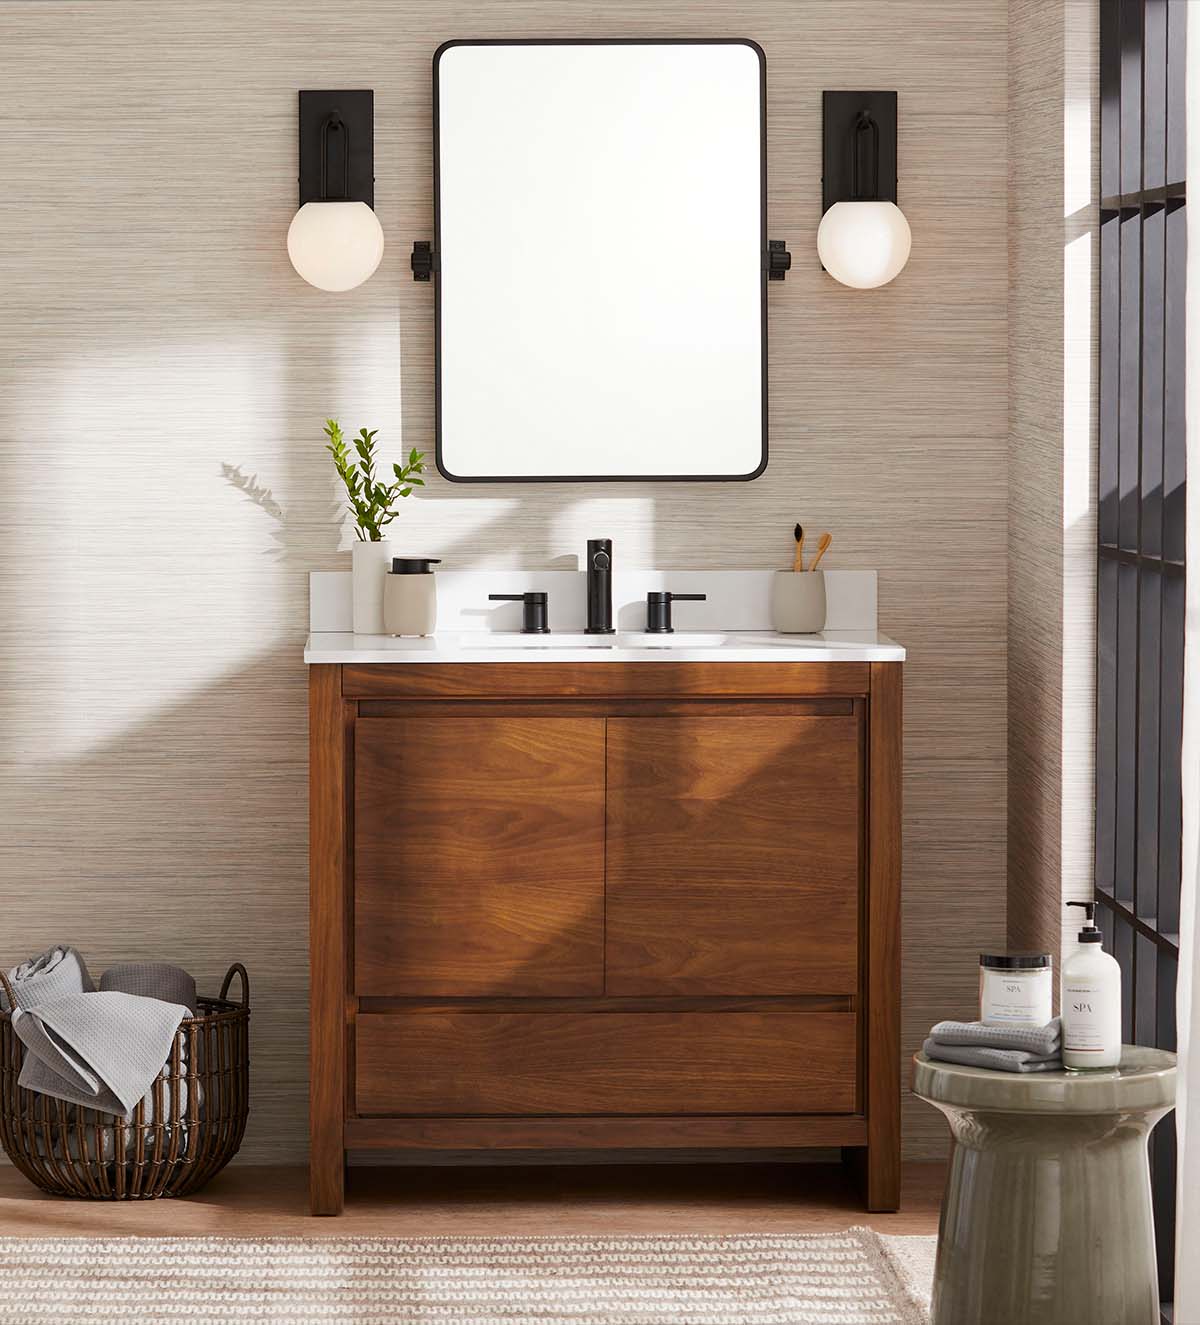 Modern bathroom update GlucksteinElements Crosby vanity